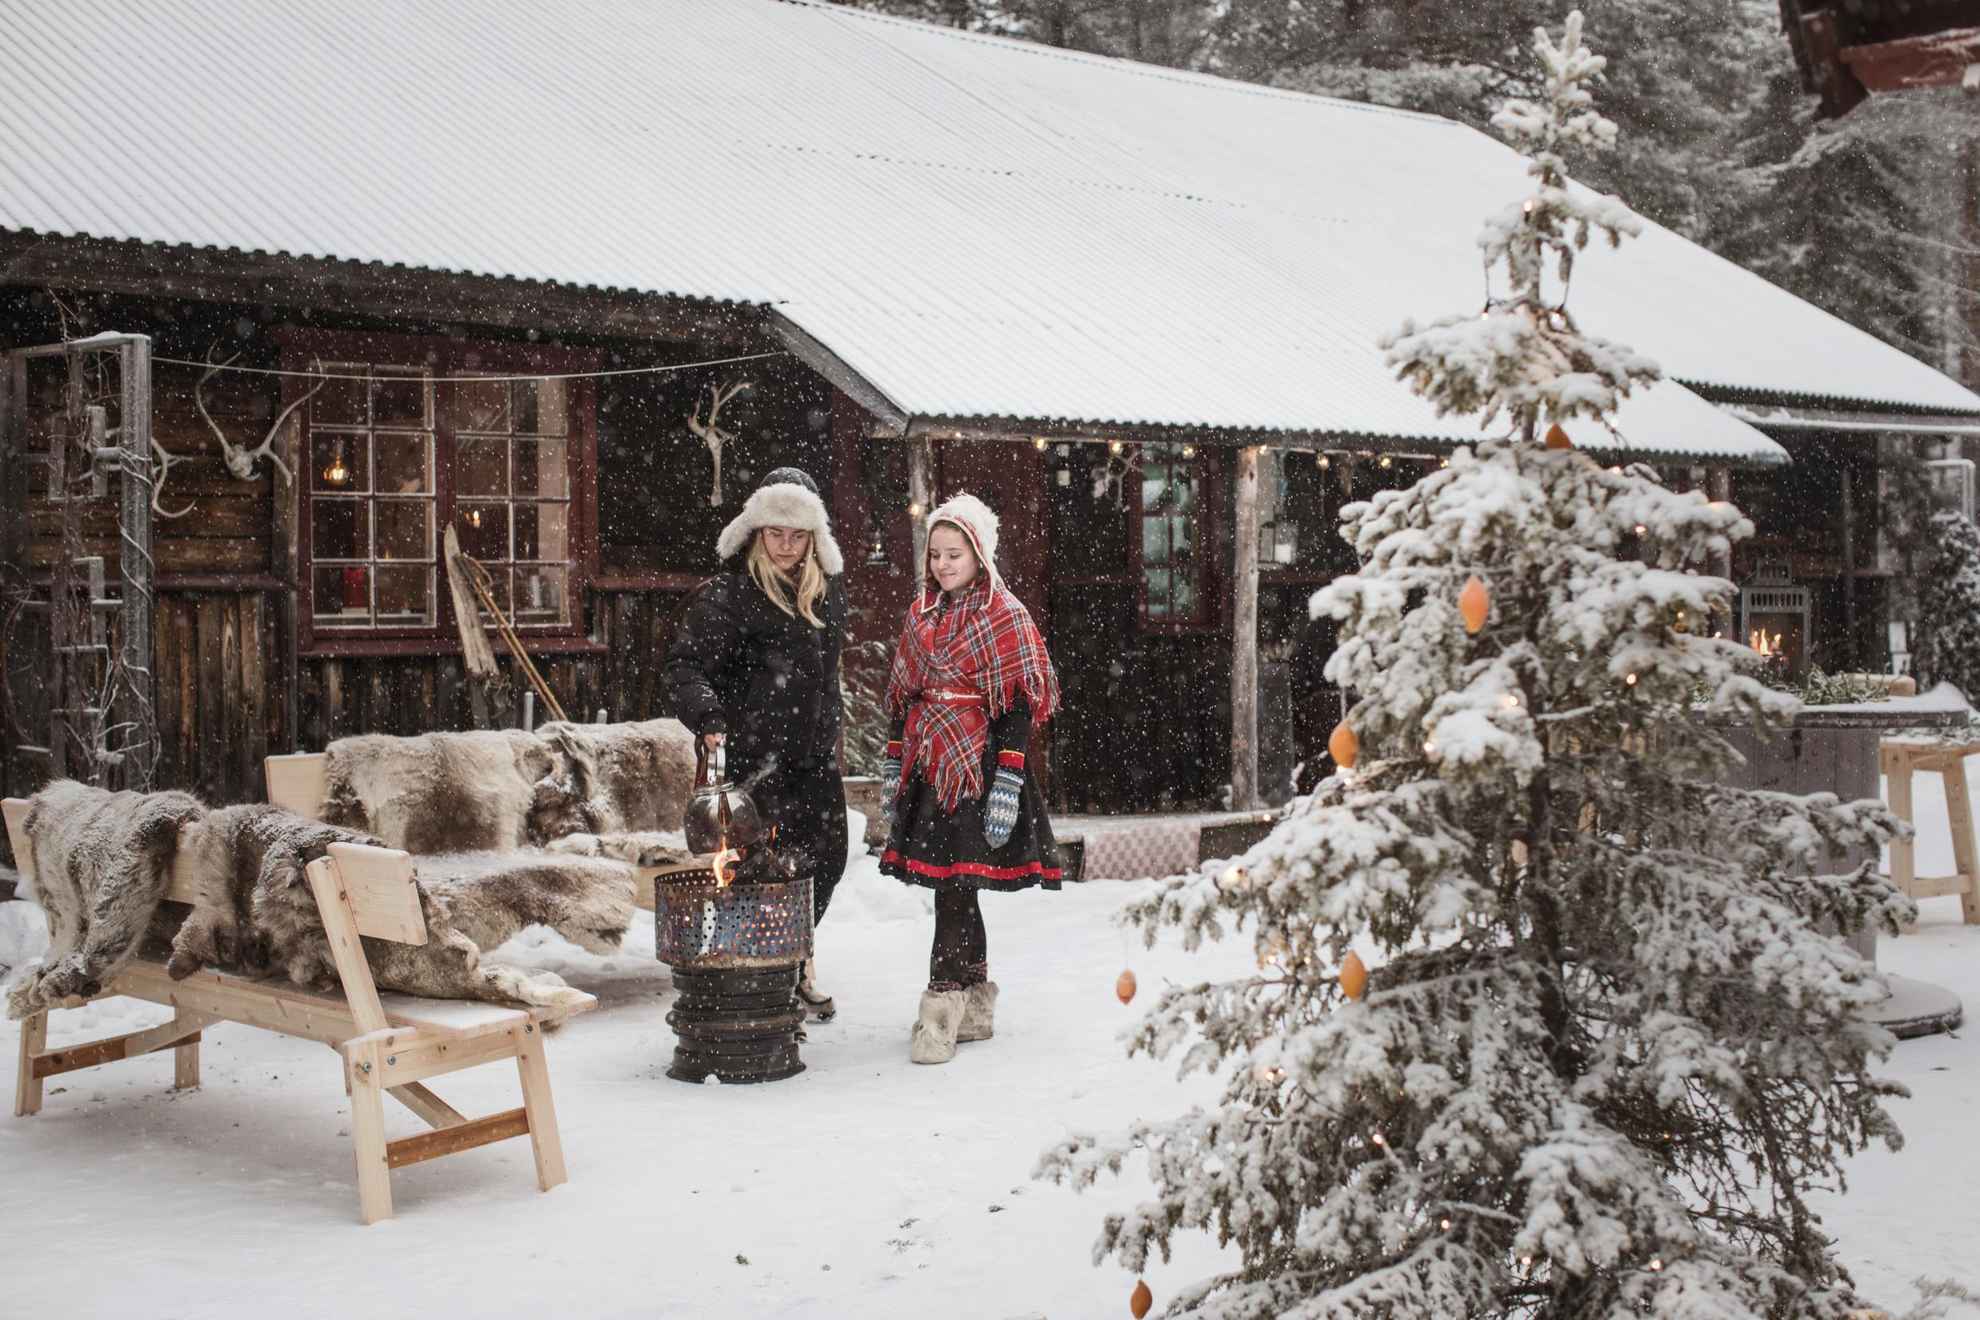 Deux jeunes femmes sont debout dans la neige devant une maison en bois. L'une des filles porte une tenue samie. Elles cuisinent sur un feu ouvert. Il y a des fourrures de rennes sur les bancs et un sapin au premier plan.